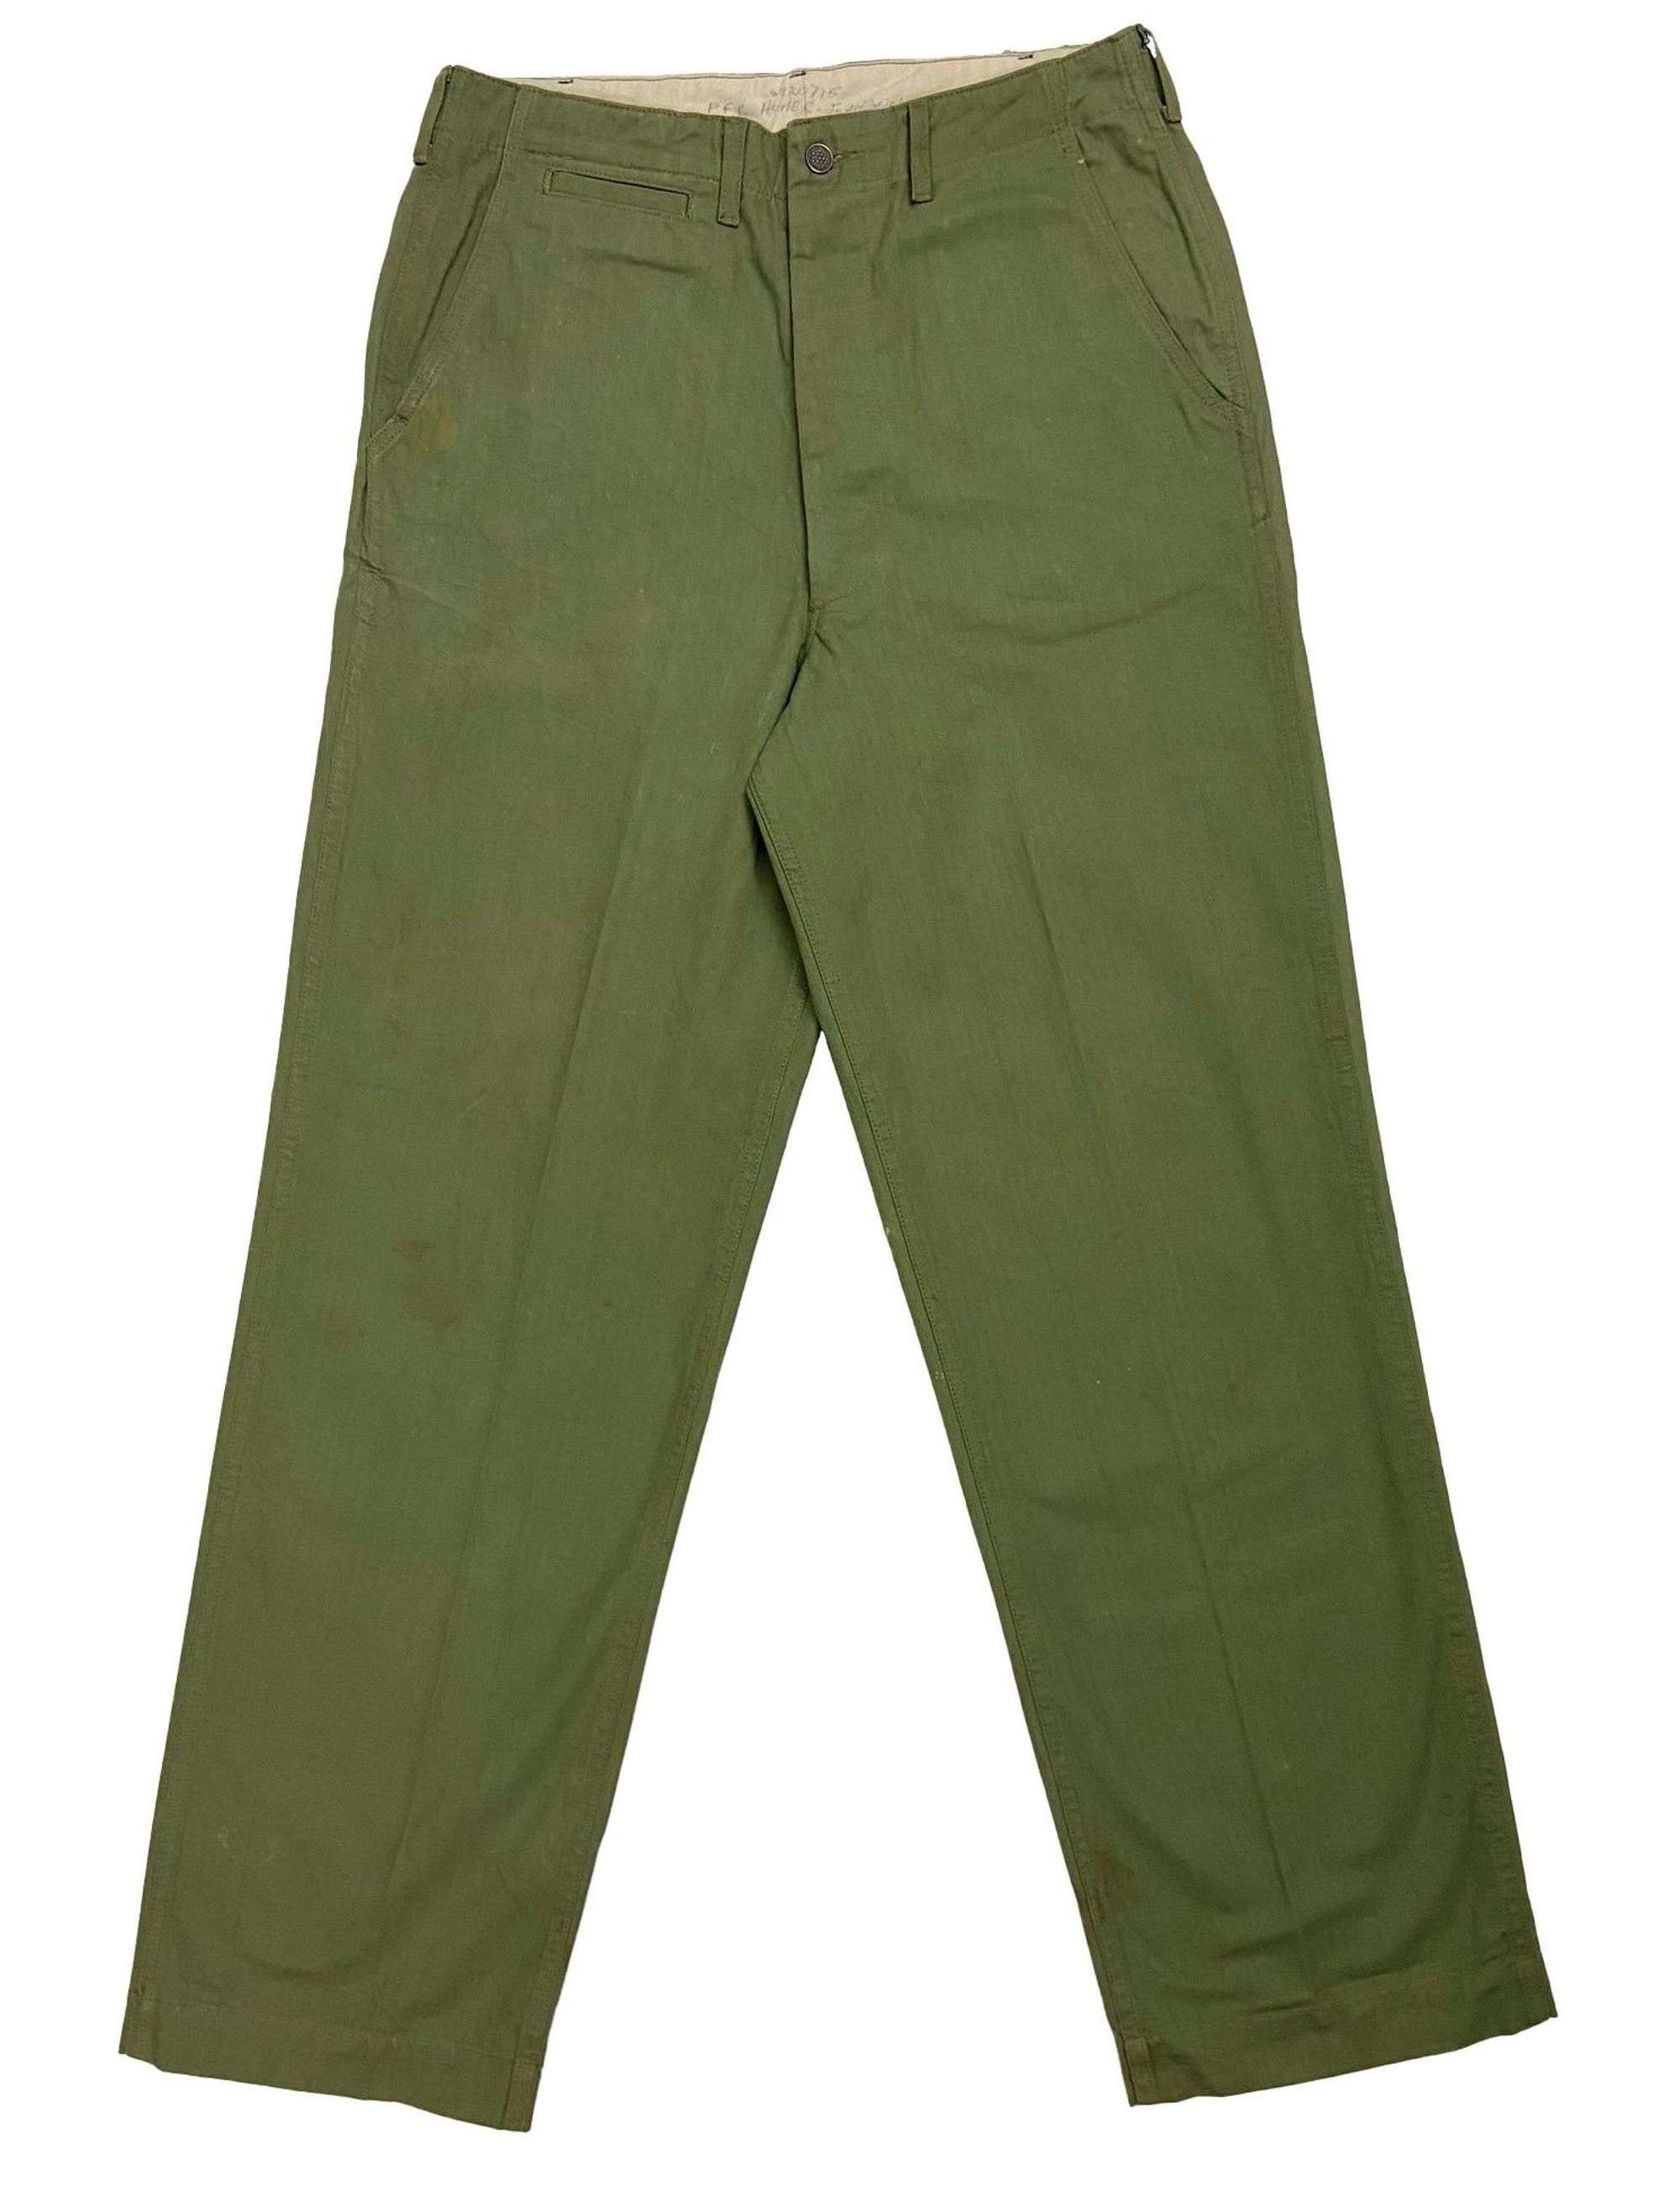 Original WW2 US Army M1942 HBT Trousers - Size 34x34 1/2